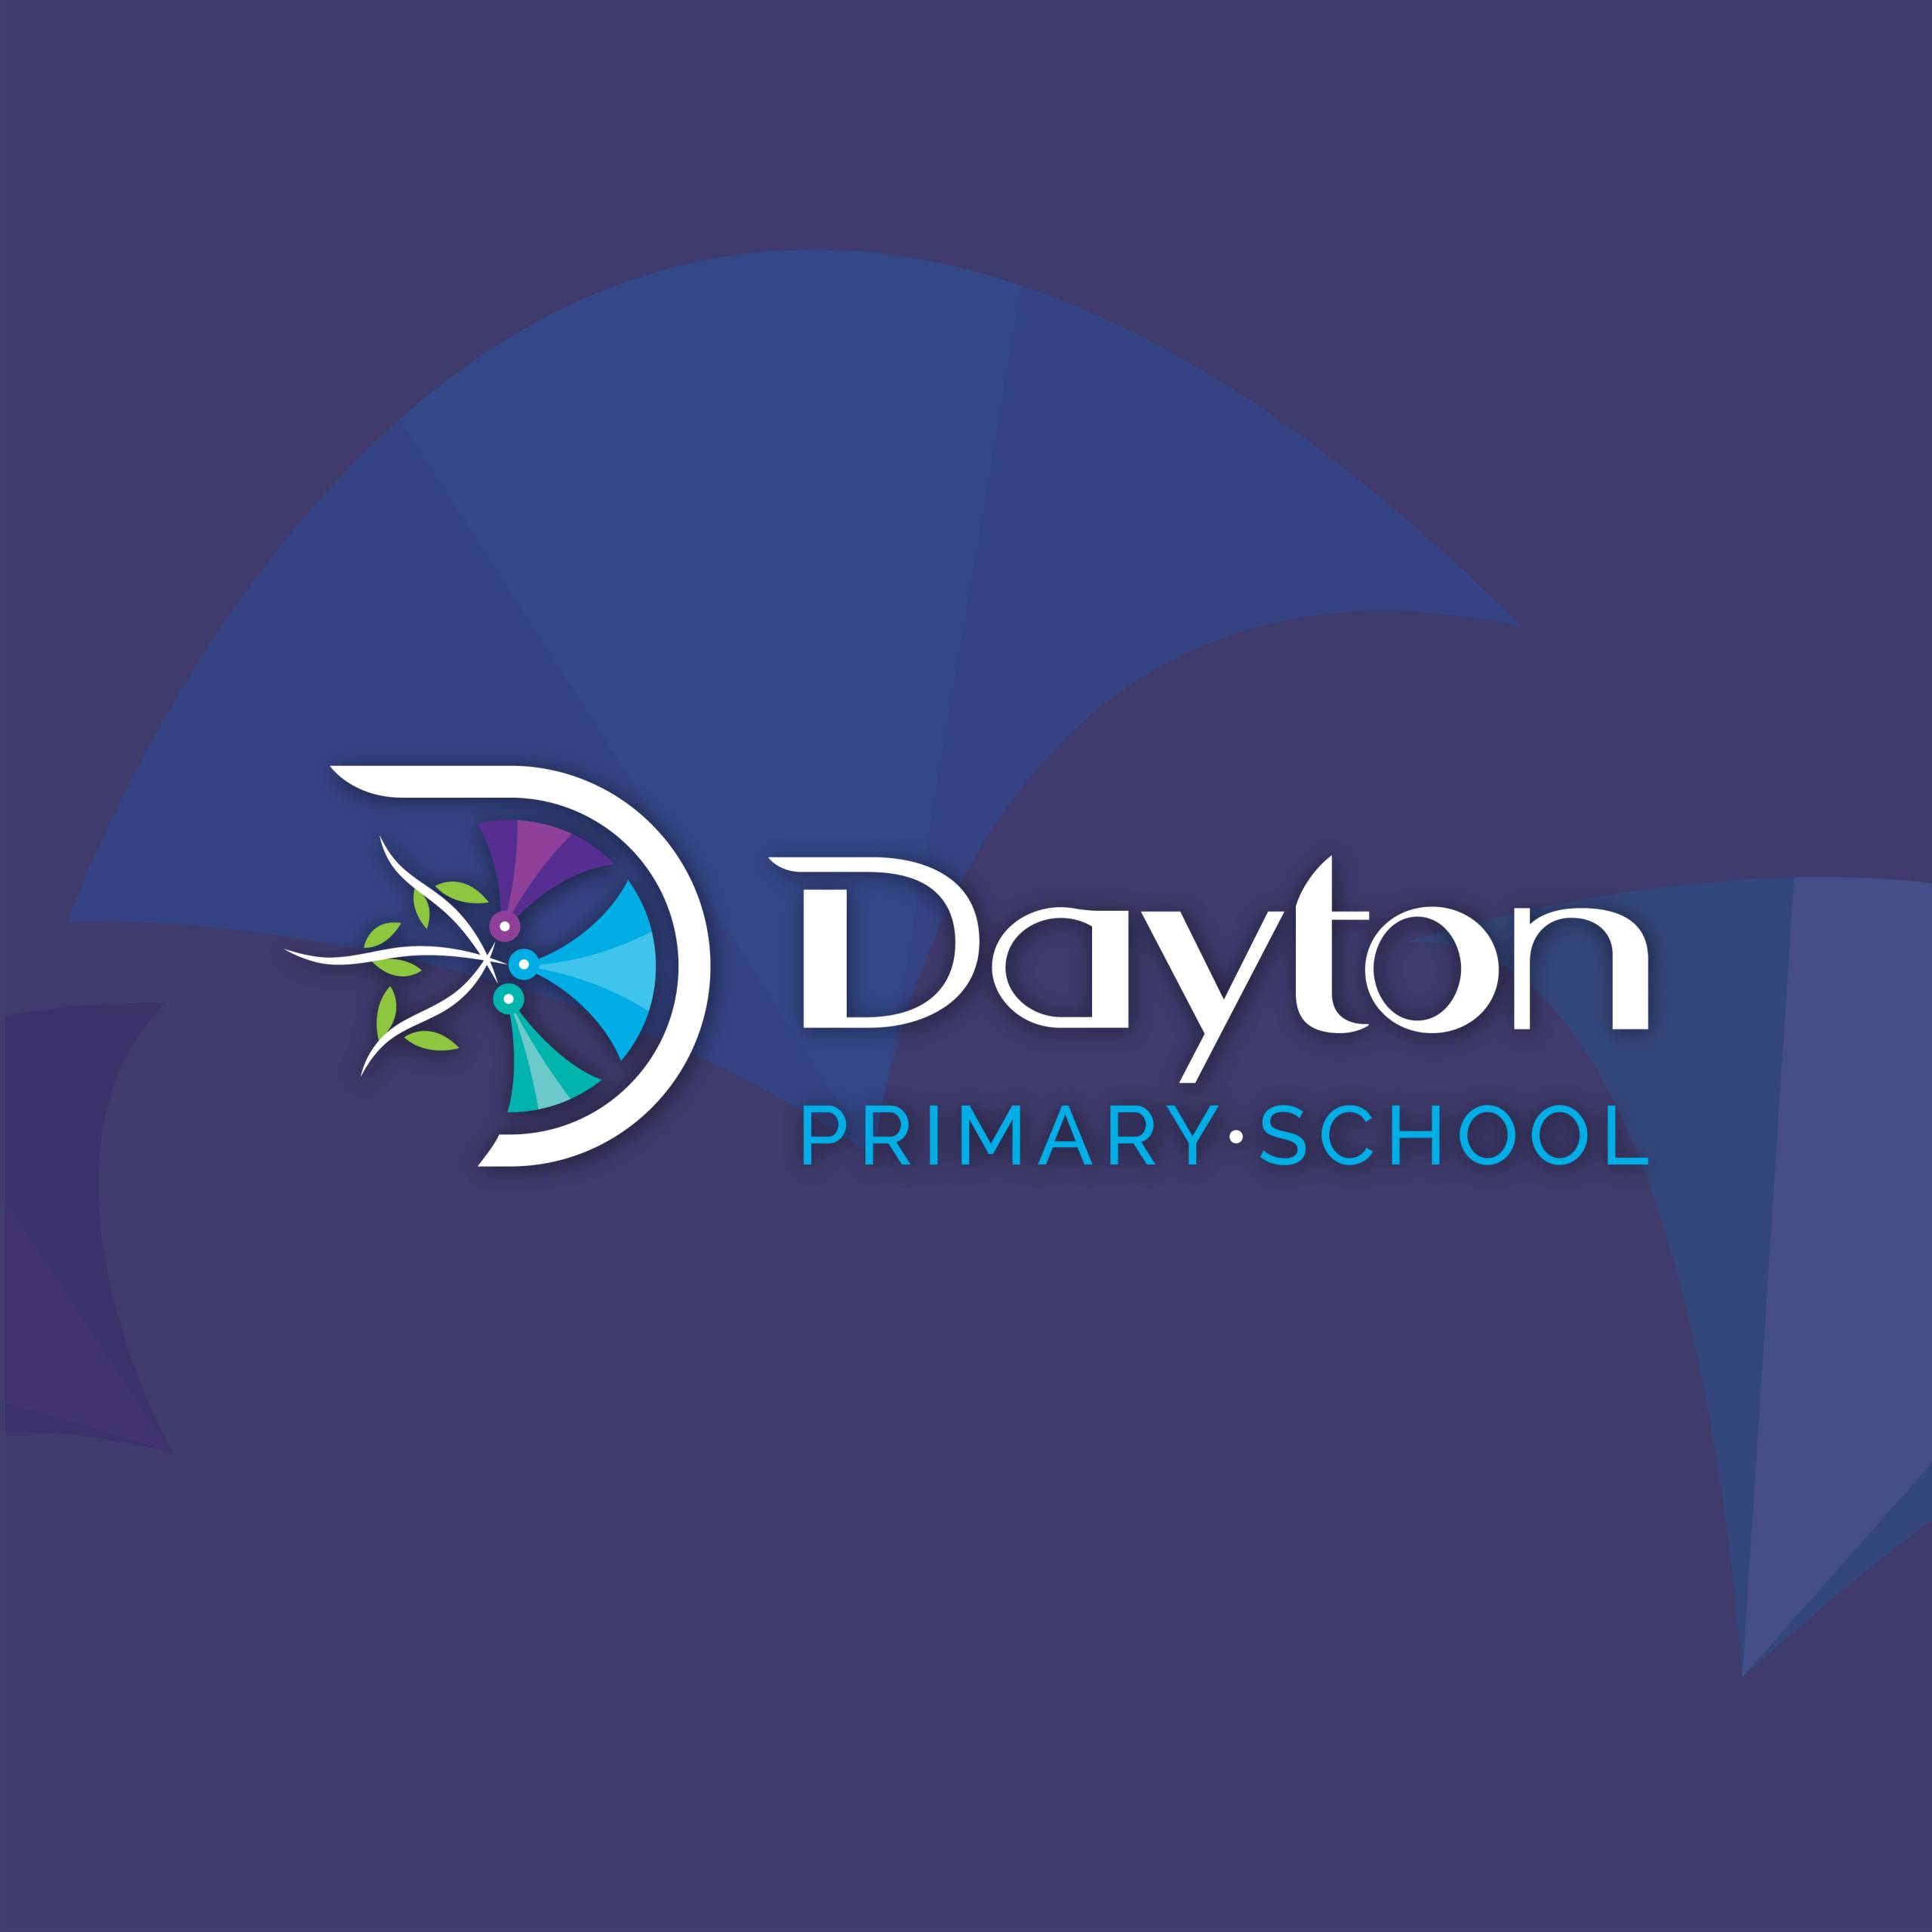 Dayton Primary School